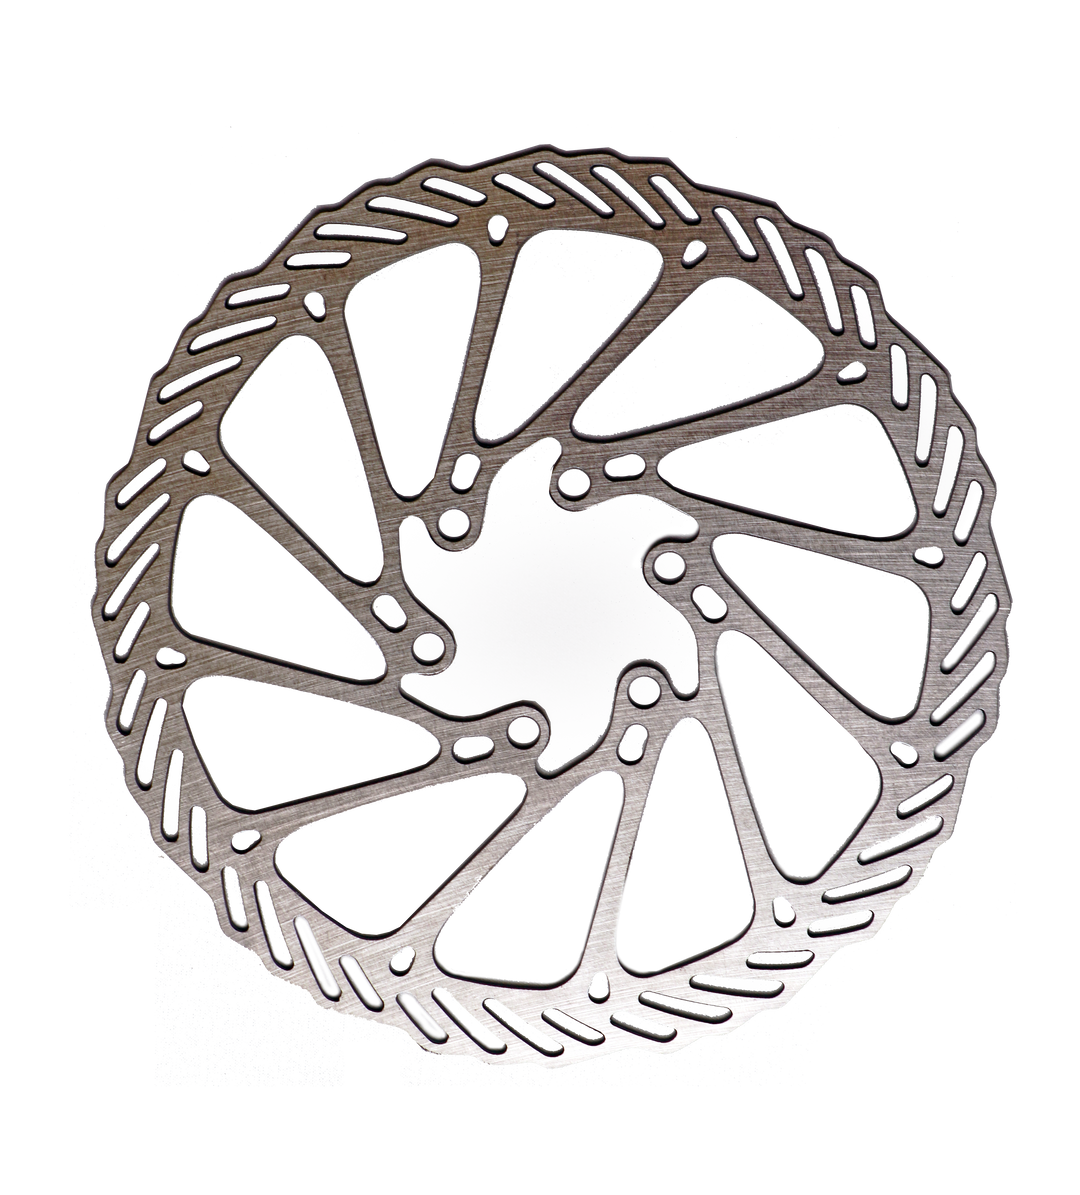 Disc Brake Rotor (160mm)